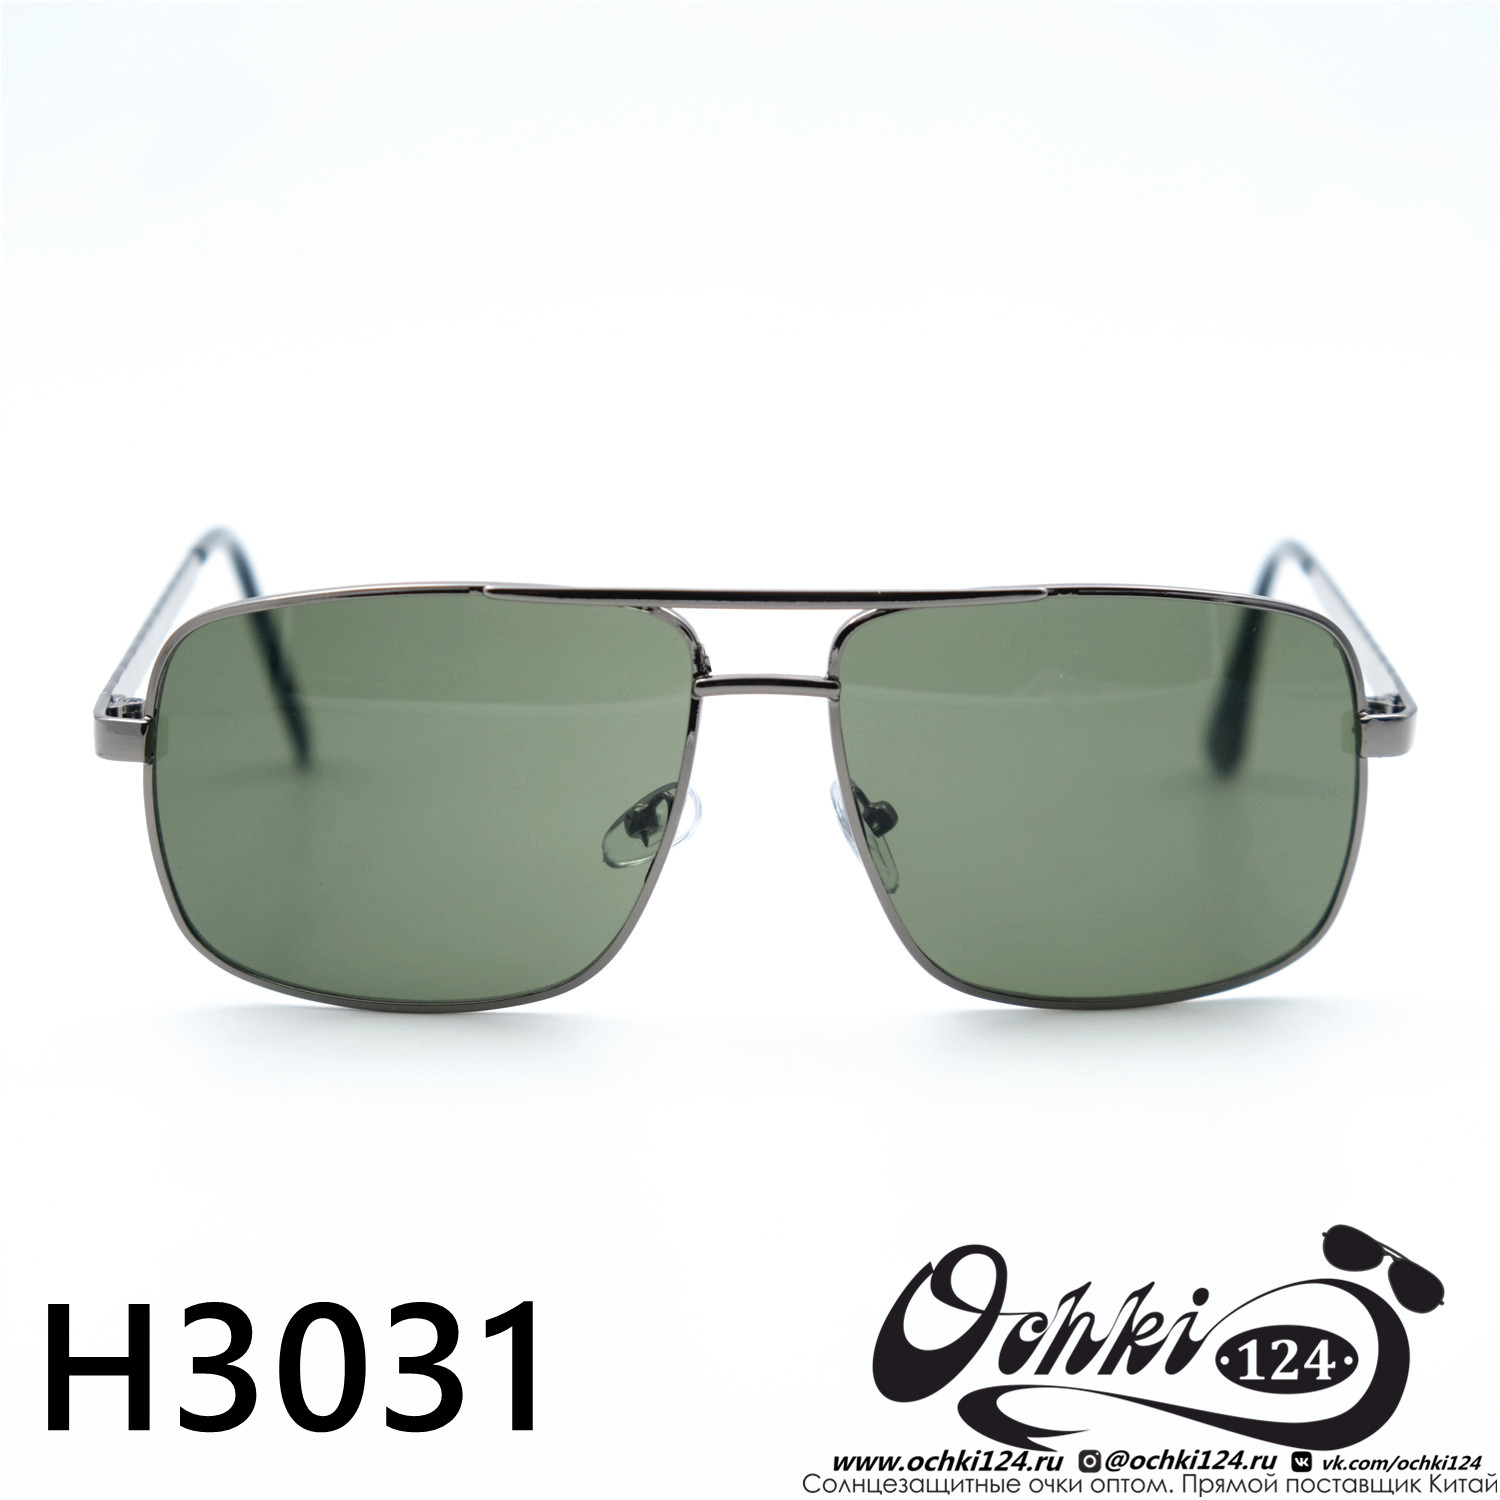  Солнцезащитные очки картинка 2023 Мужские Квадратные HAWAWA H3031-C6 